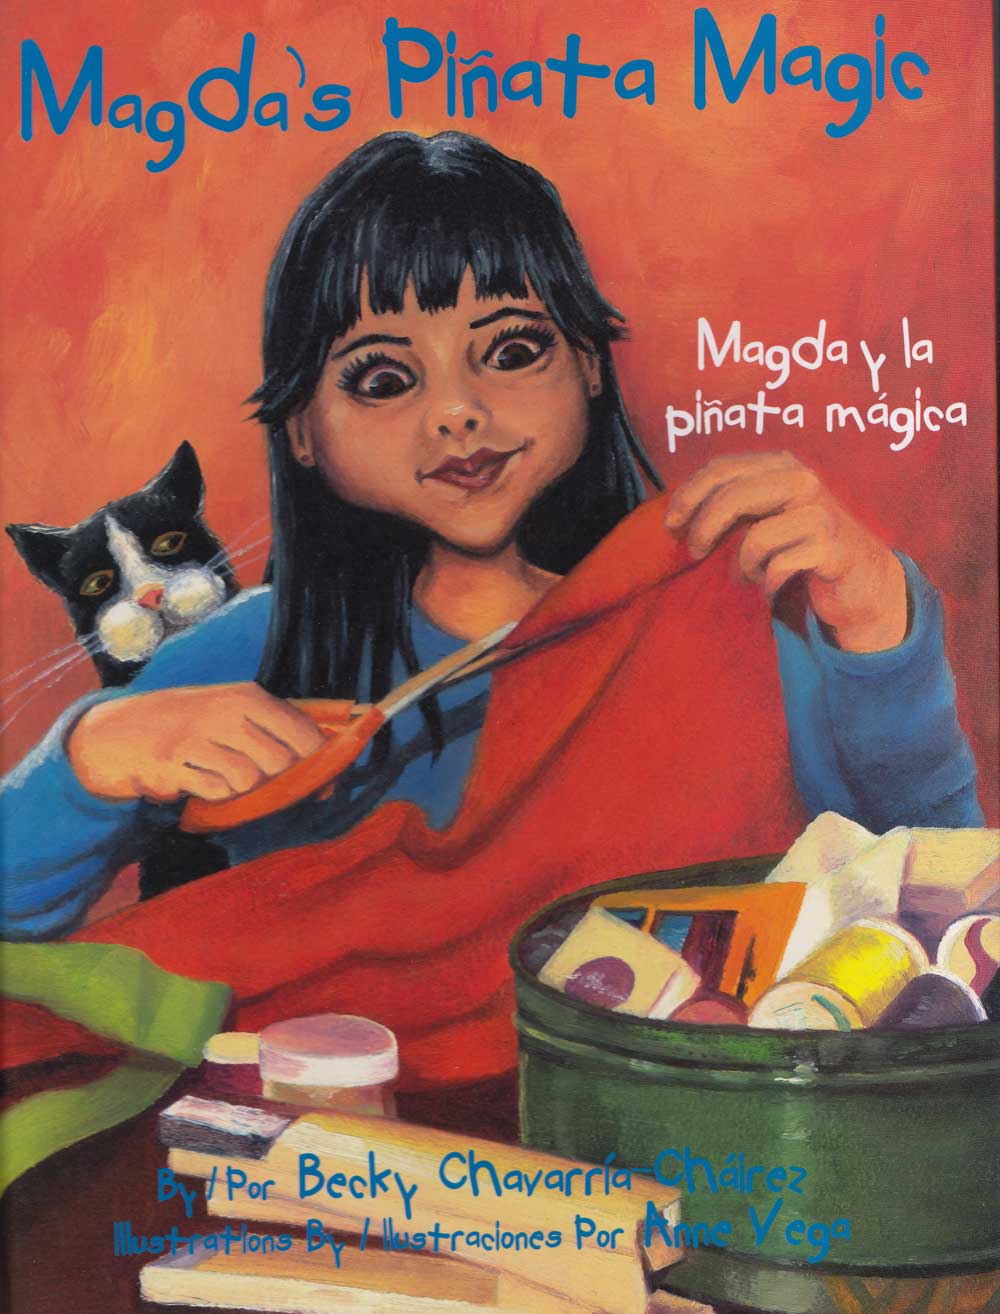 Magda y la pinata magico - Magdas Pinata Magic, Del Sol Books